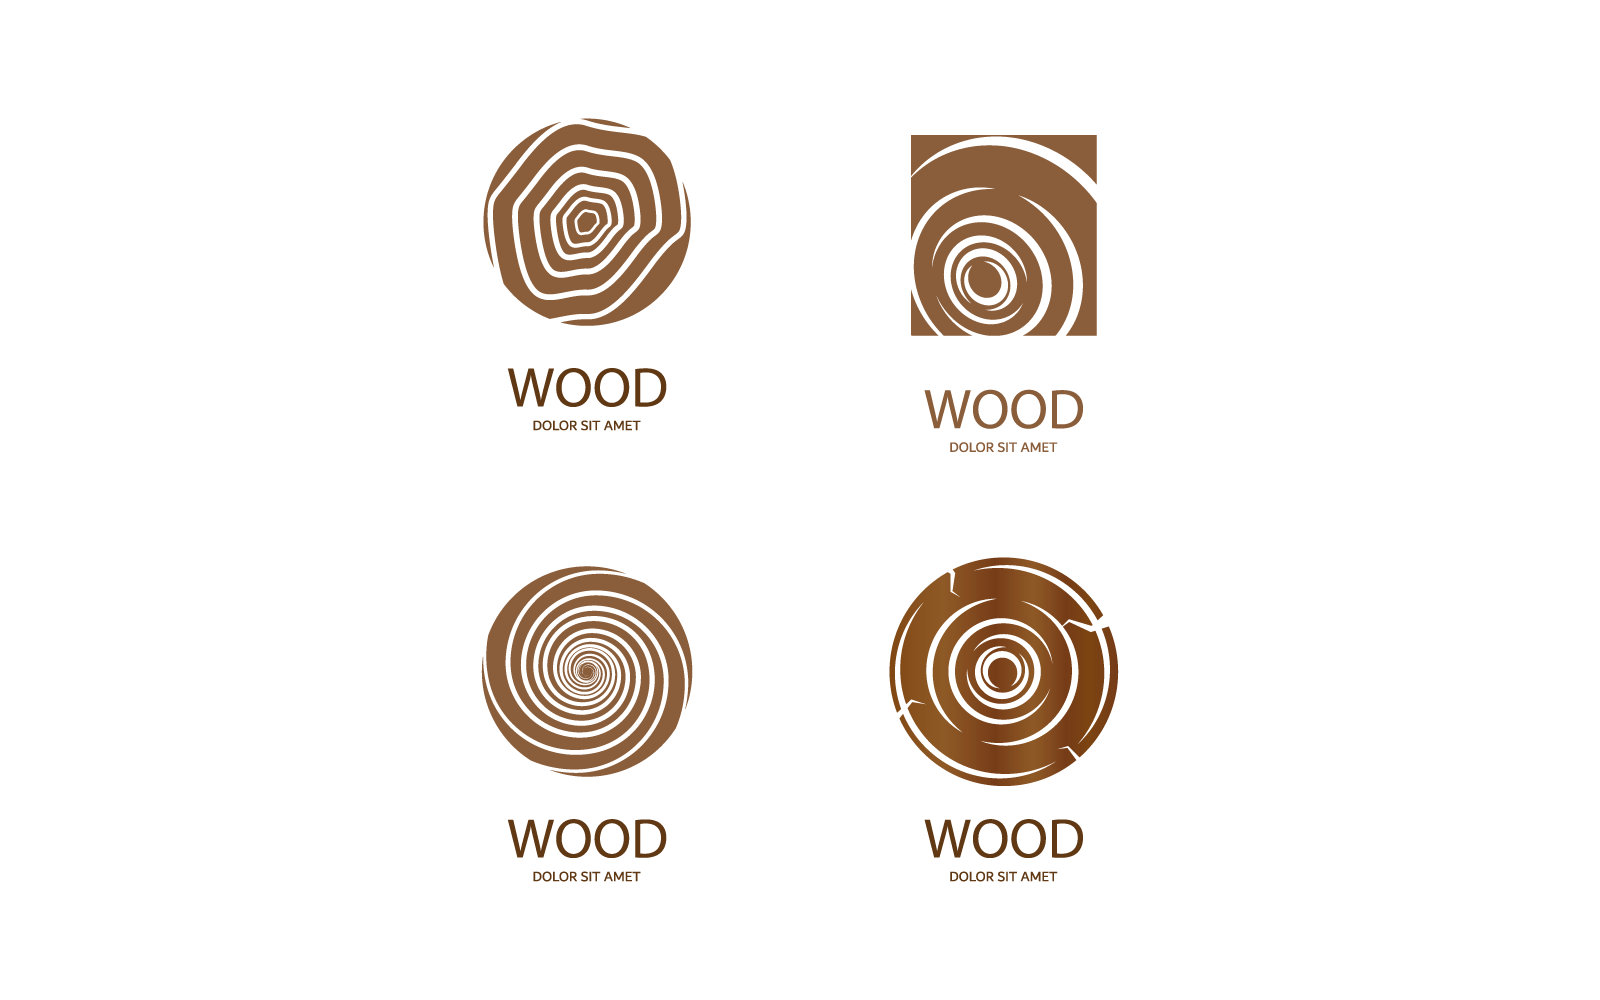 Wood logo design illustration vector flat design